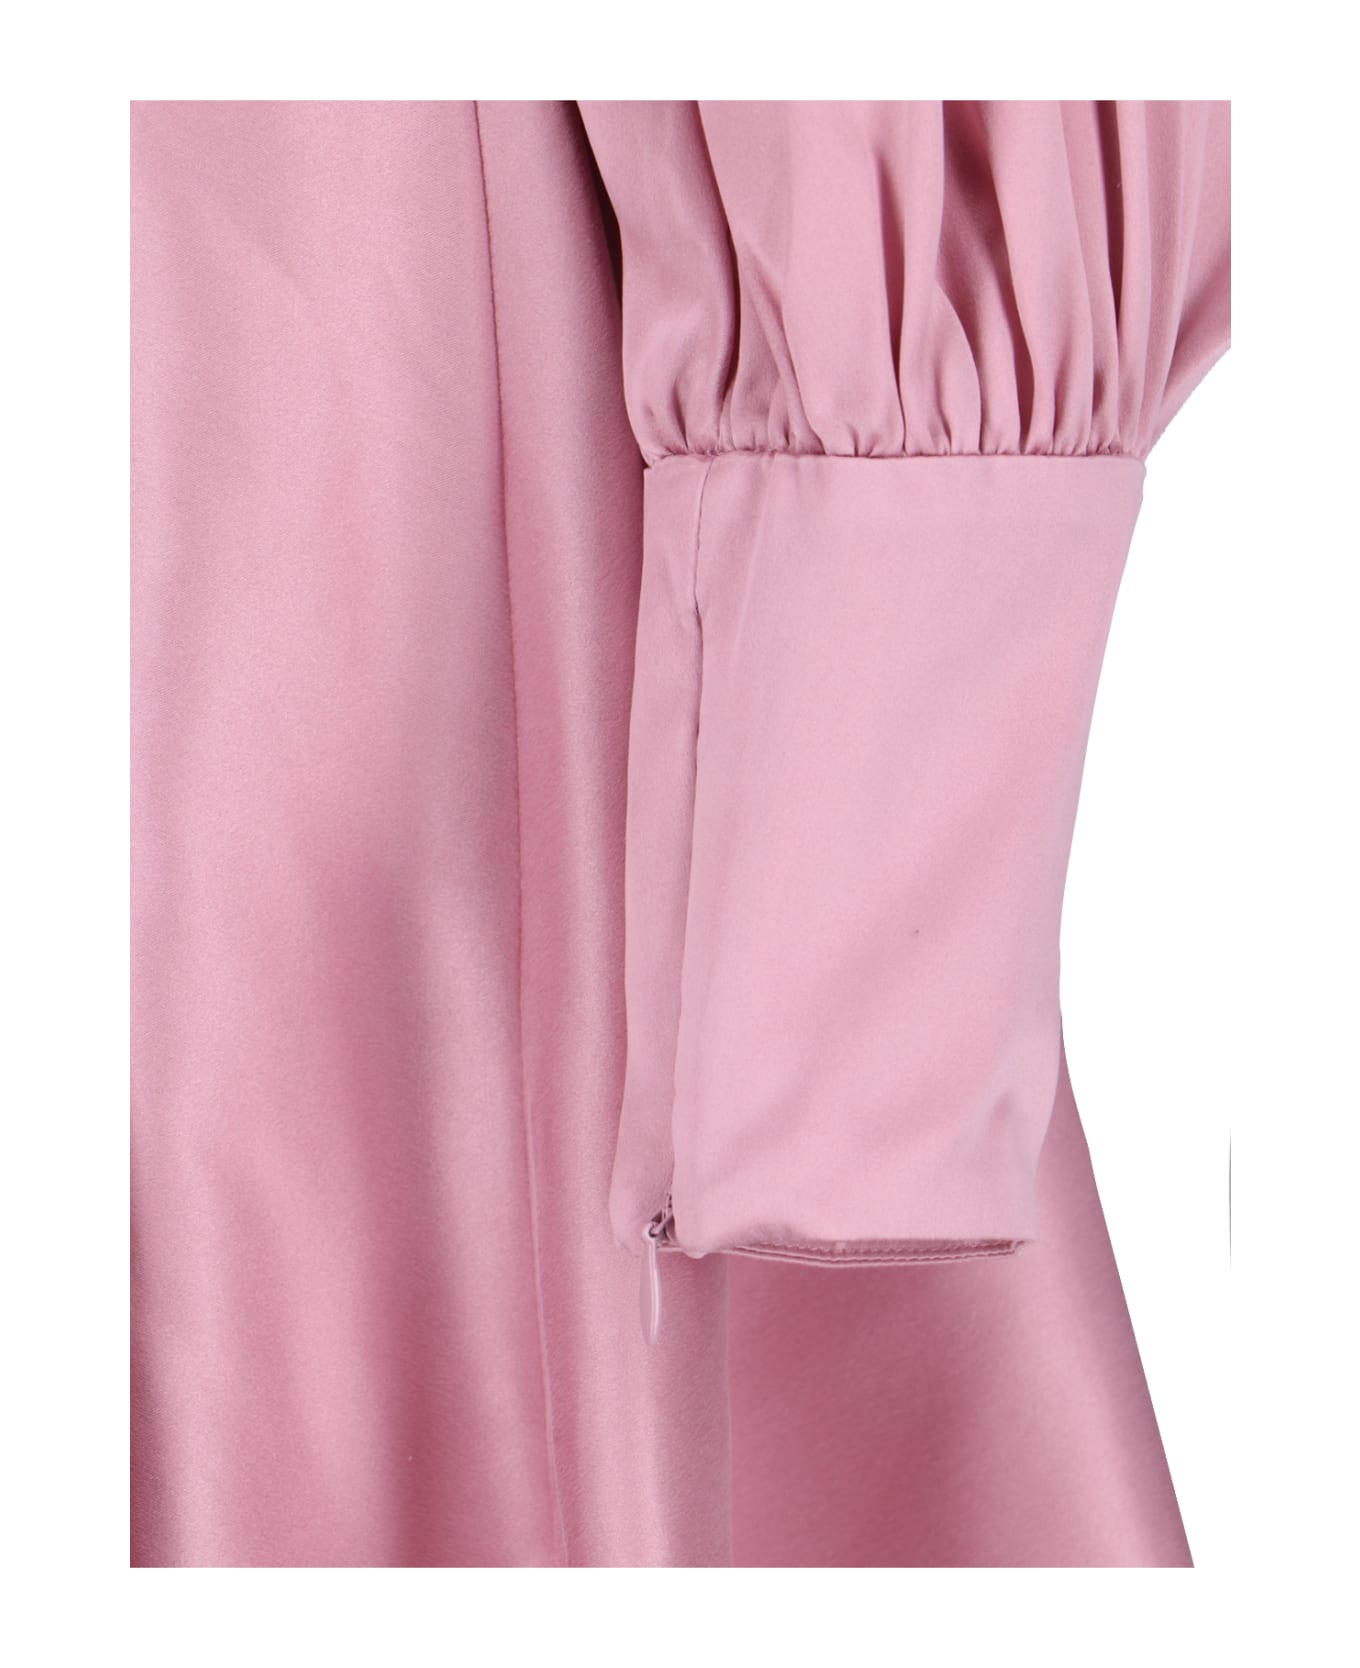 Zimmermann Asymmetrical Mini Dress - Pink